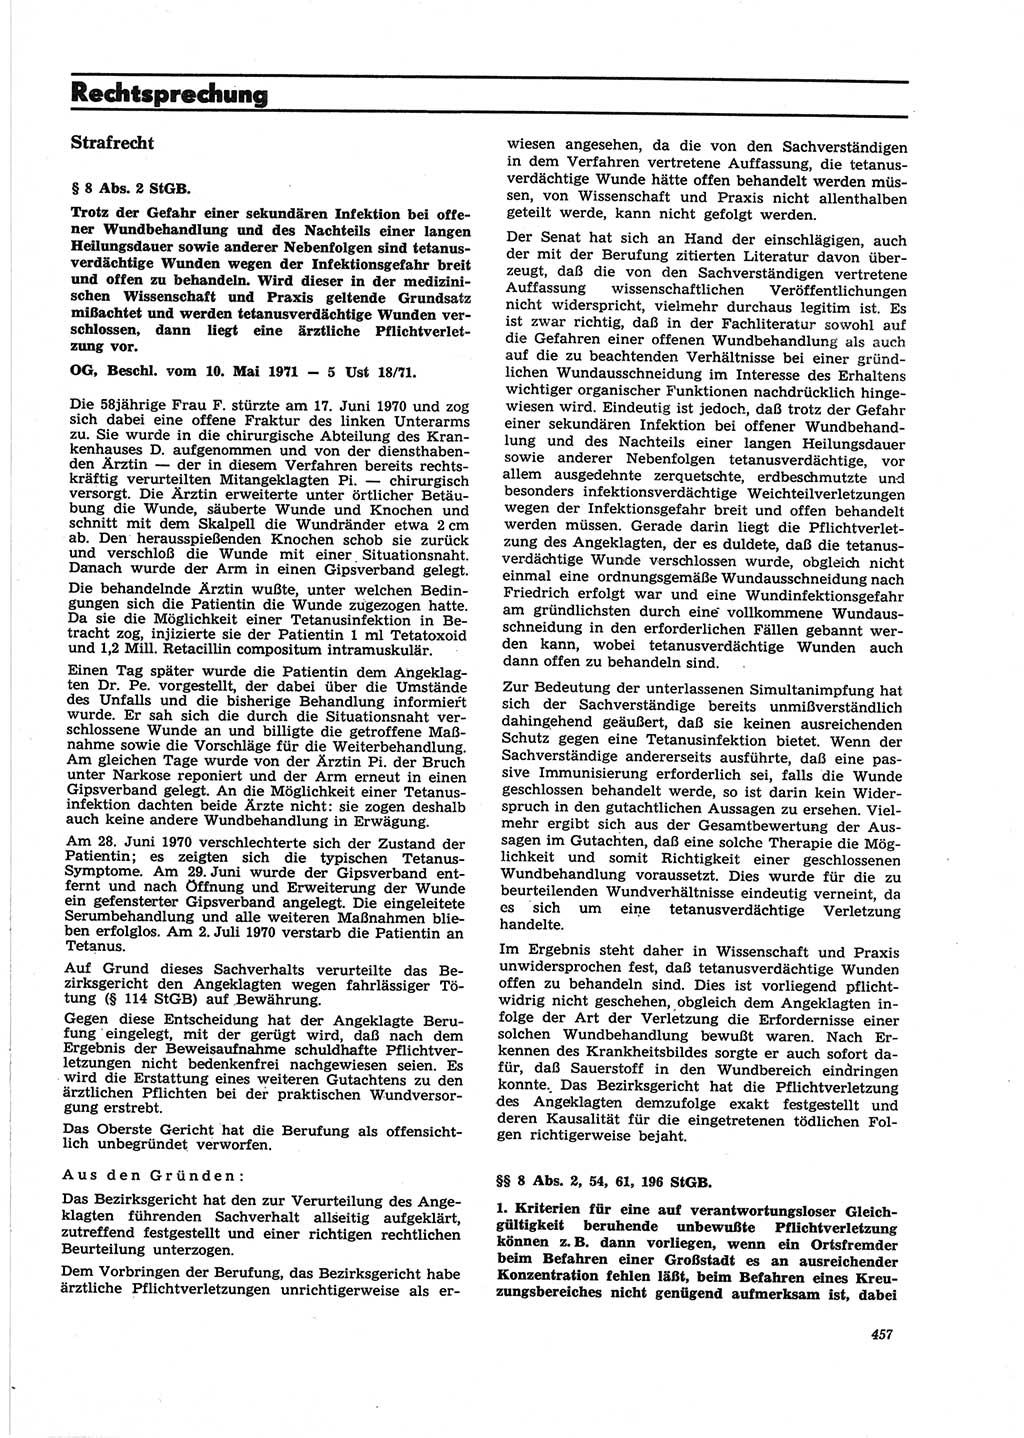 Neue Justiz (NJ), Zeitschrift für Recht und Rechtswissenschaft [Deutsche Demokratische Republik (DDR)], 25. Jahrgang 1971, Seite 457 (NJ DDR 1971, S. 457)